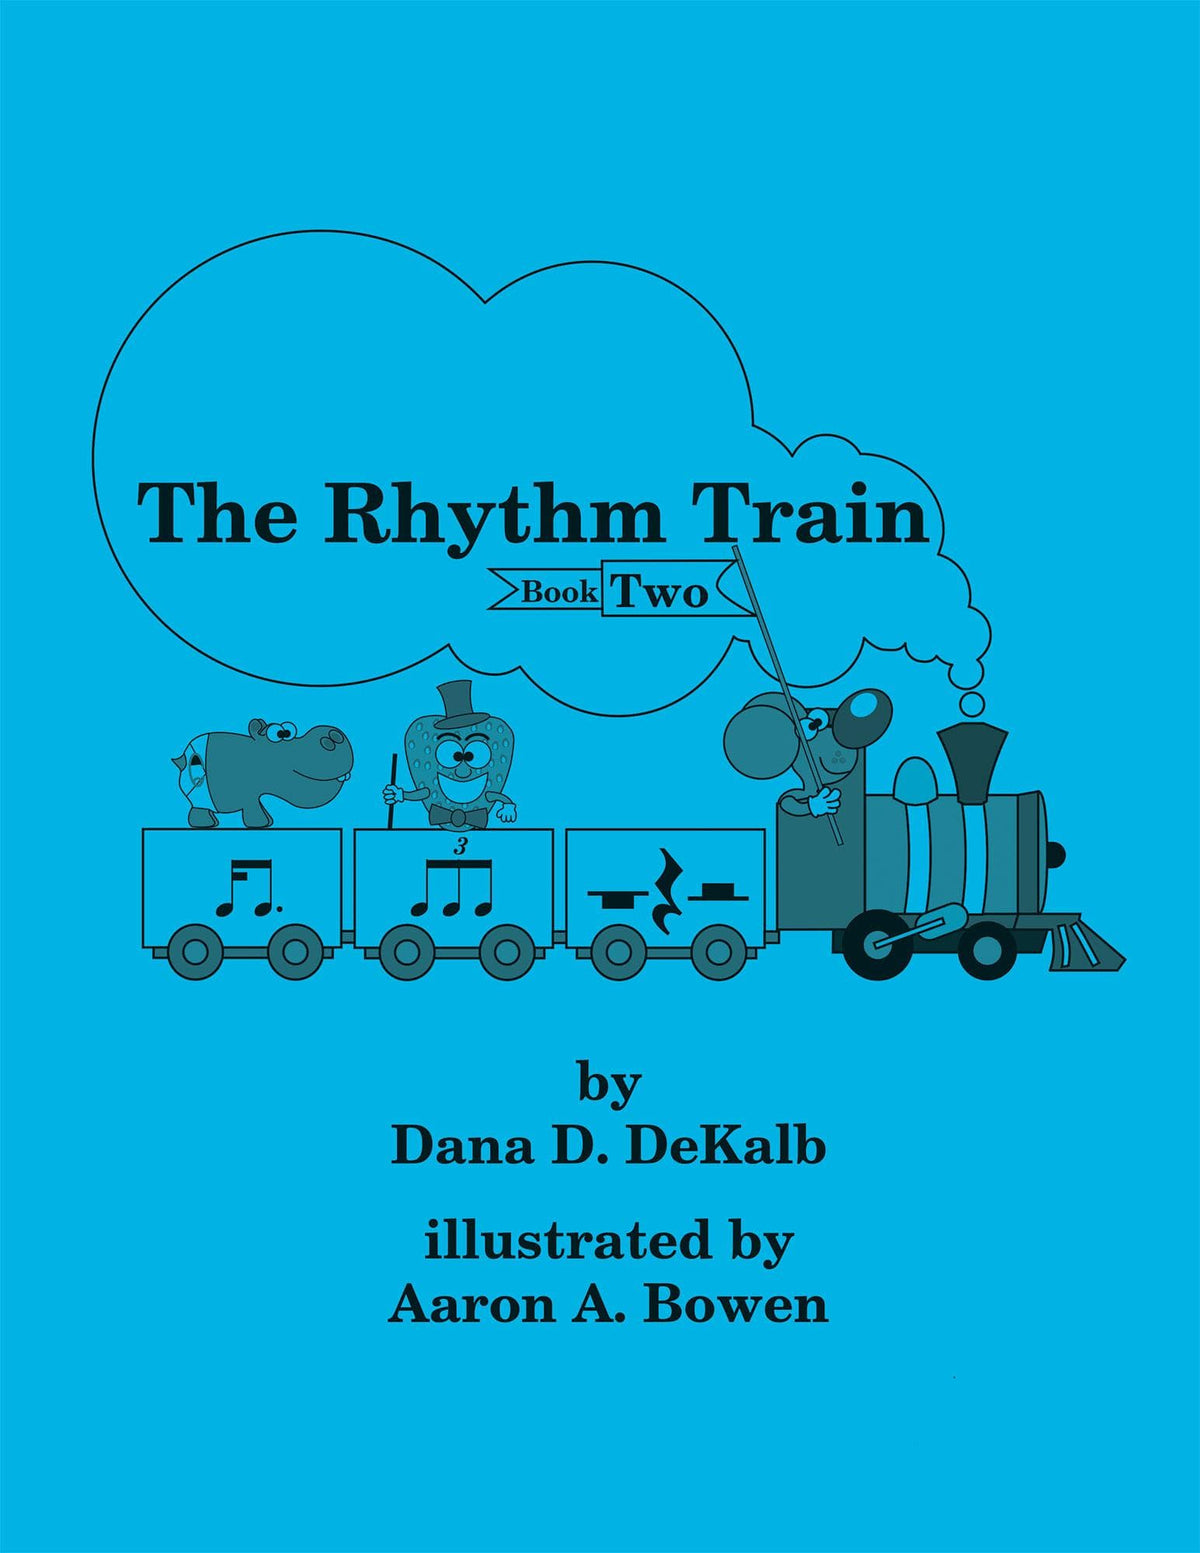 The Rhythm Train by Dana DeKalb Volume 2 - Digital Download